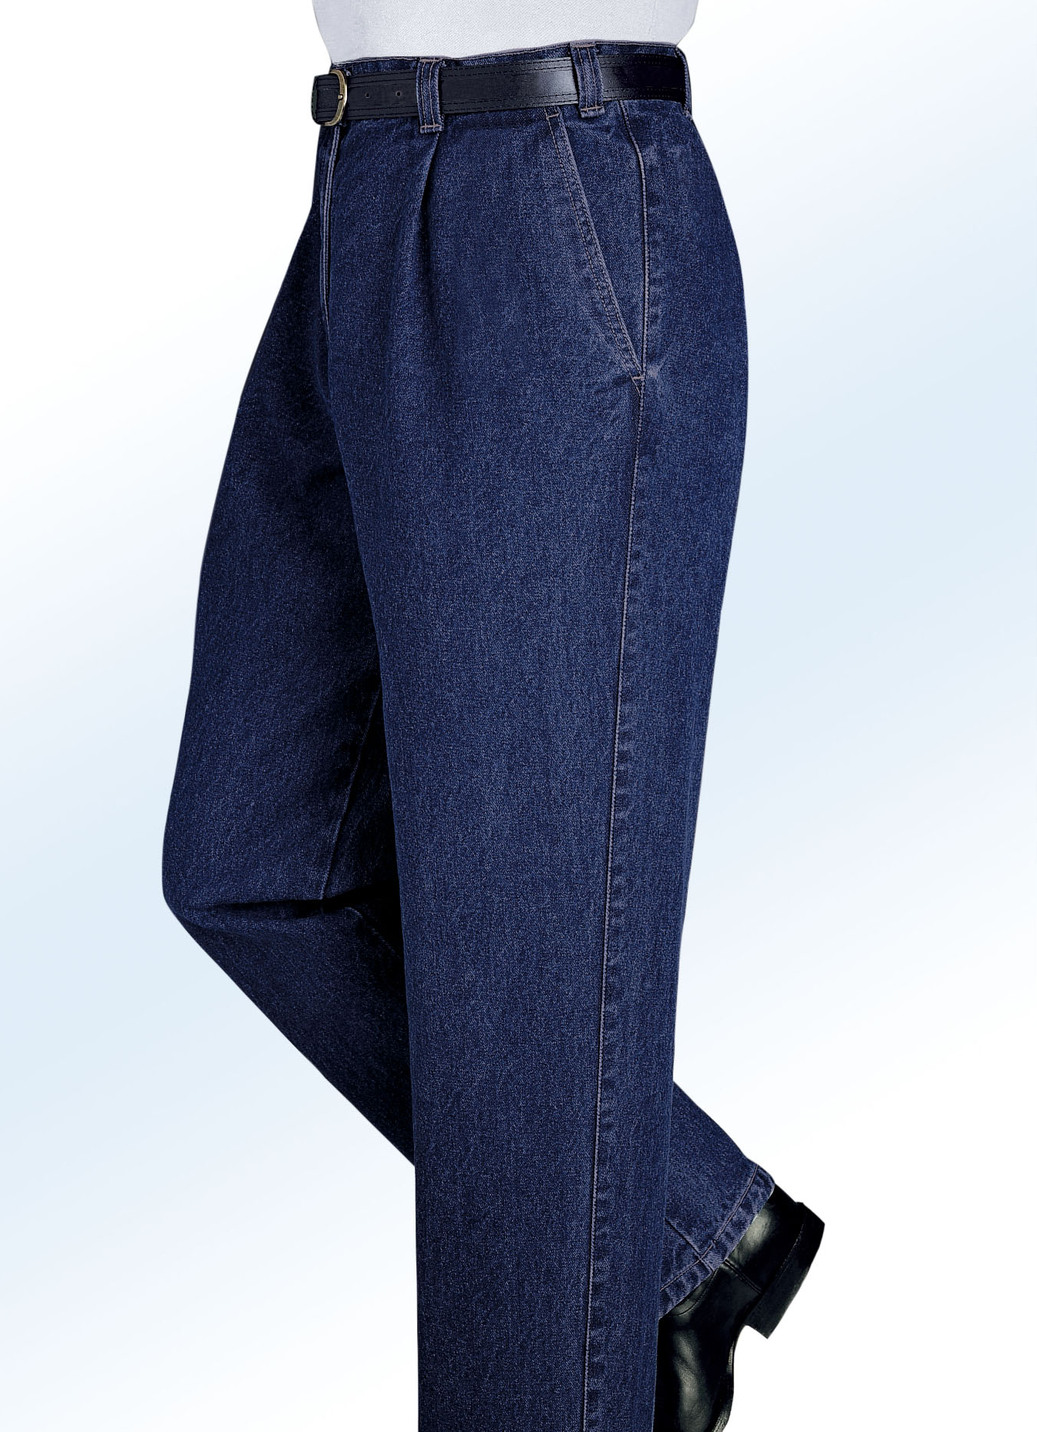 "Francesco Botti"-Jeans in 2 Qualitäten und 3 Farben, Qualität 1.Qualität, Dunkeljeans, Größe 57 von FRANCESCO BOTTI